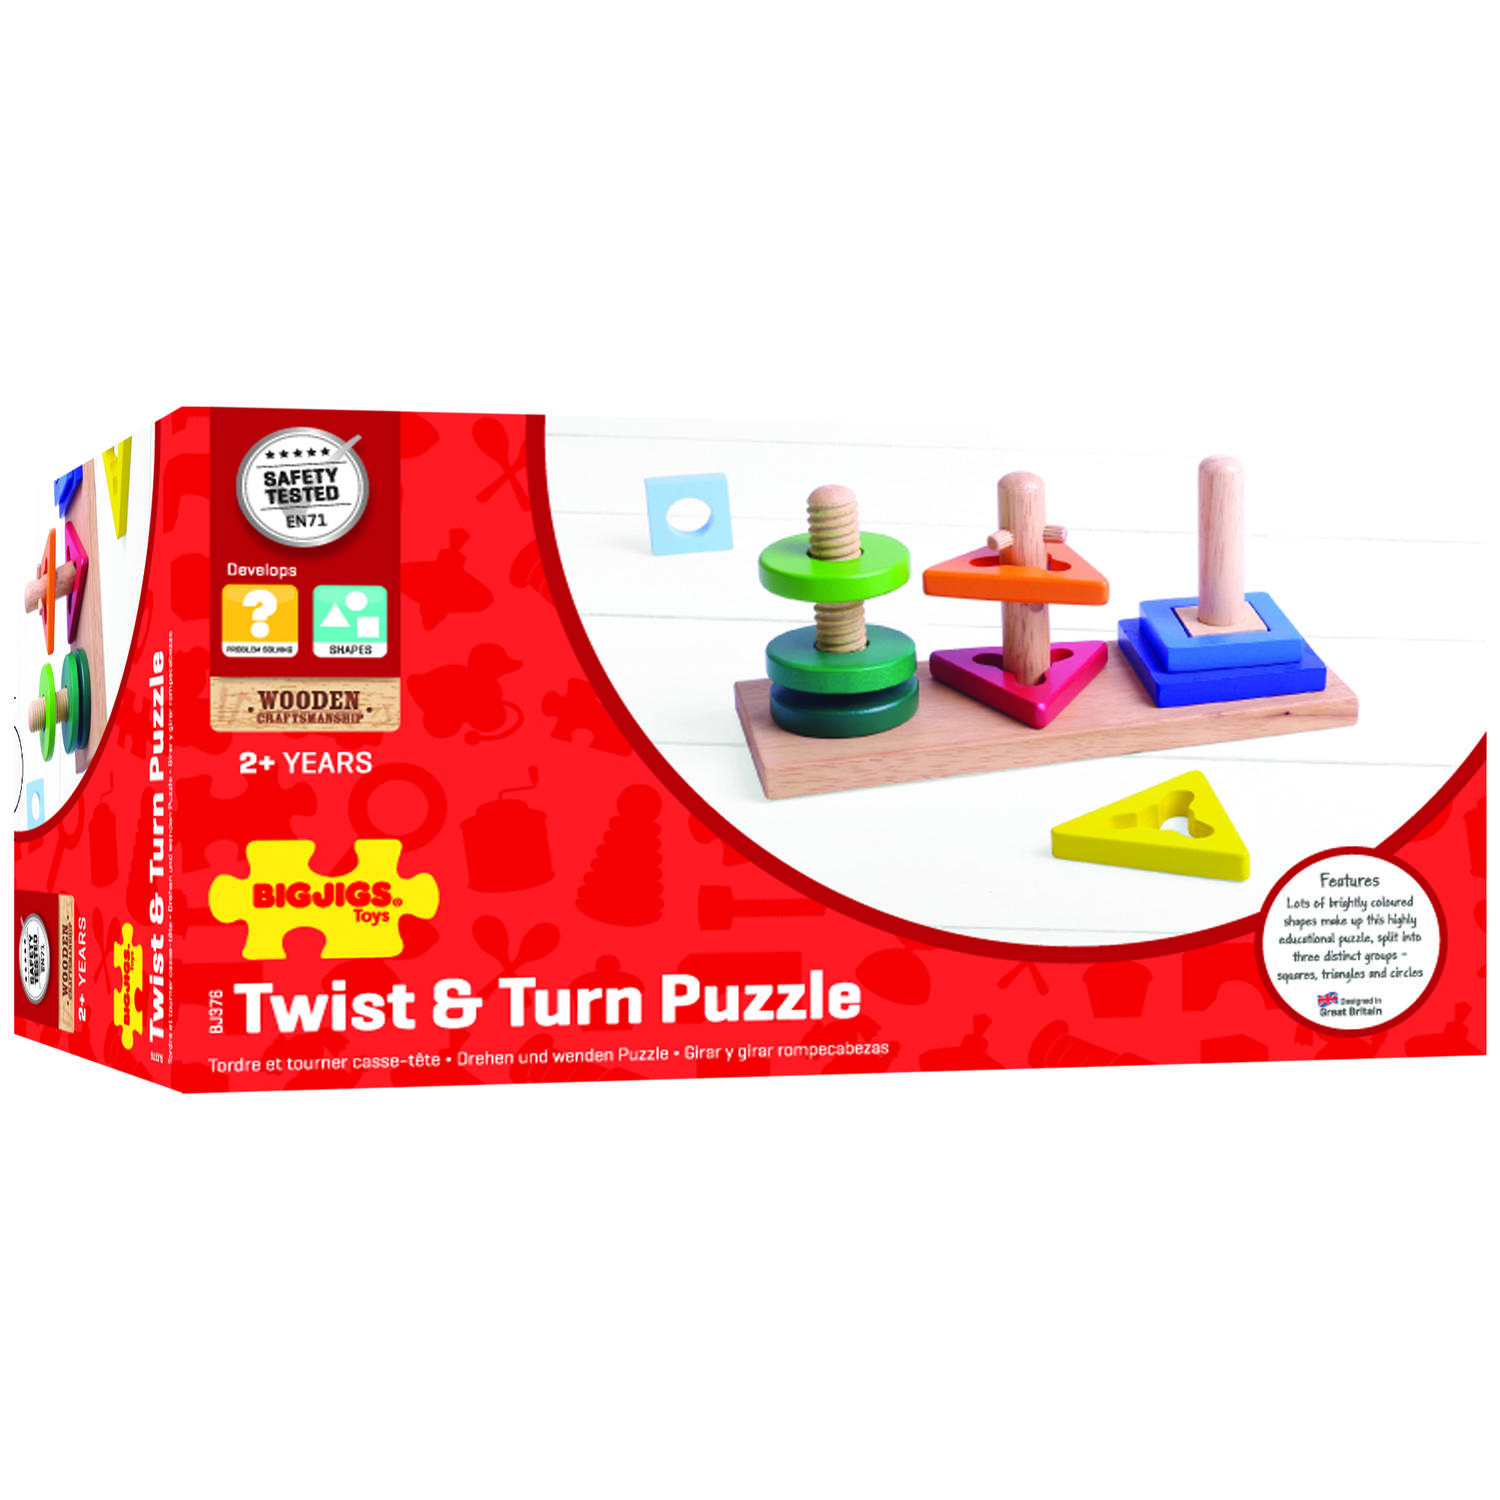 Joc de potrivire - 3 forme geometrice PlayLearn Toys